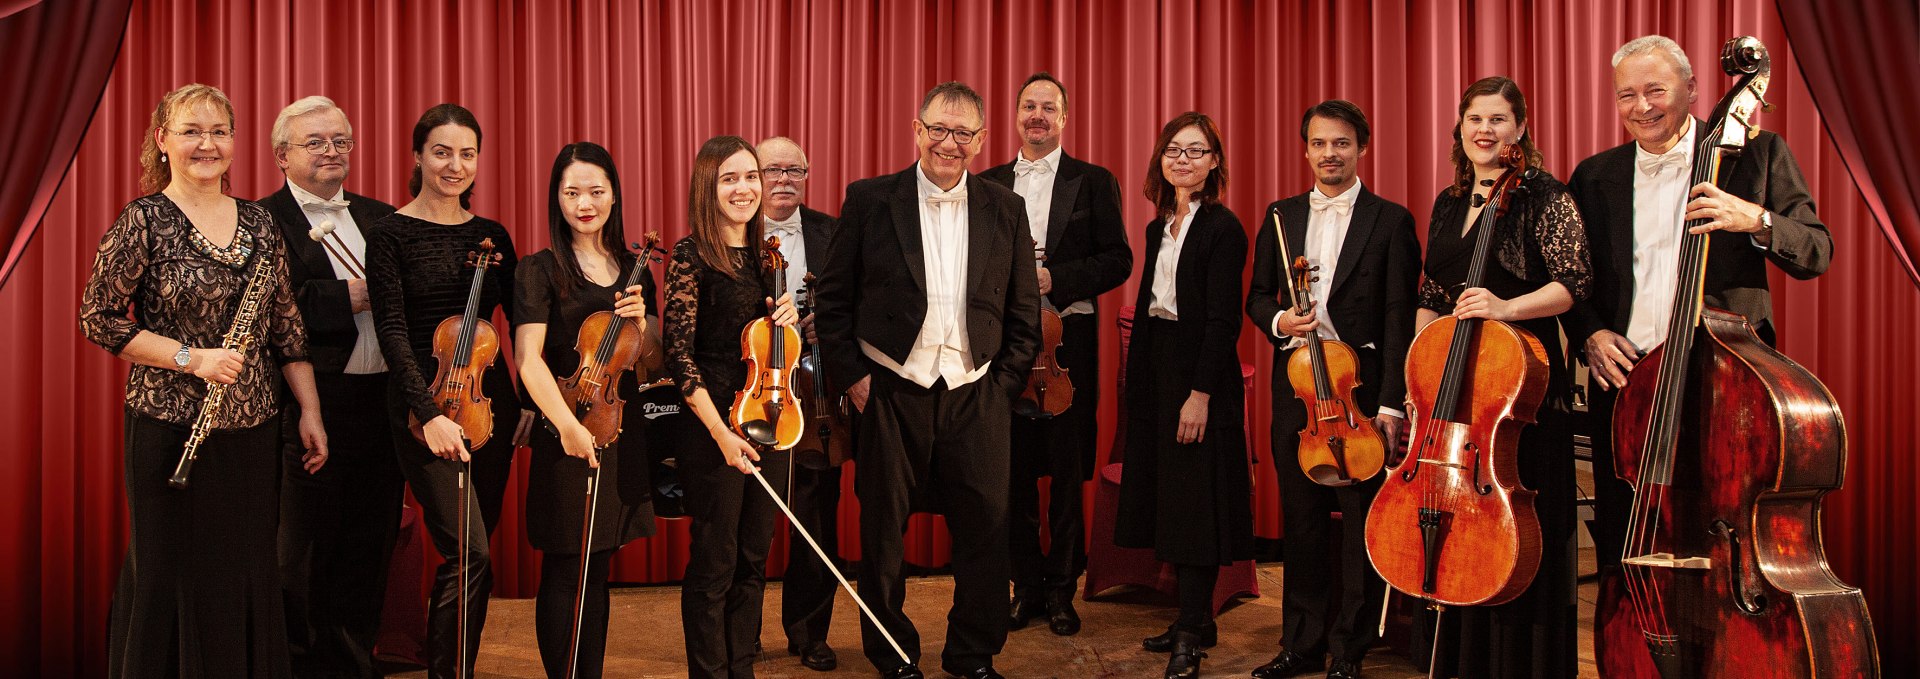 Brandenburg Concert Orchestra Eberswalde, © U. Blume